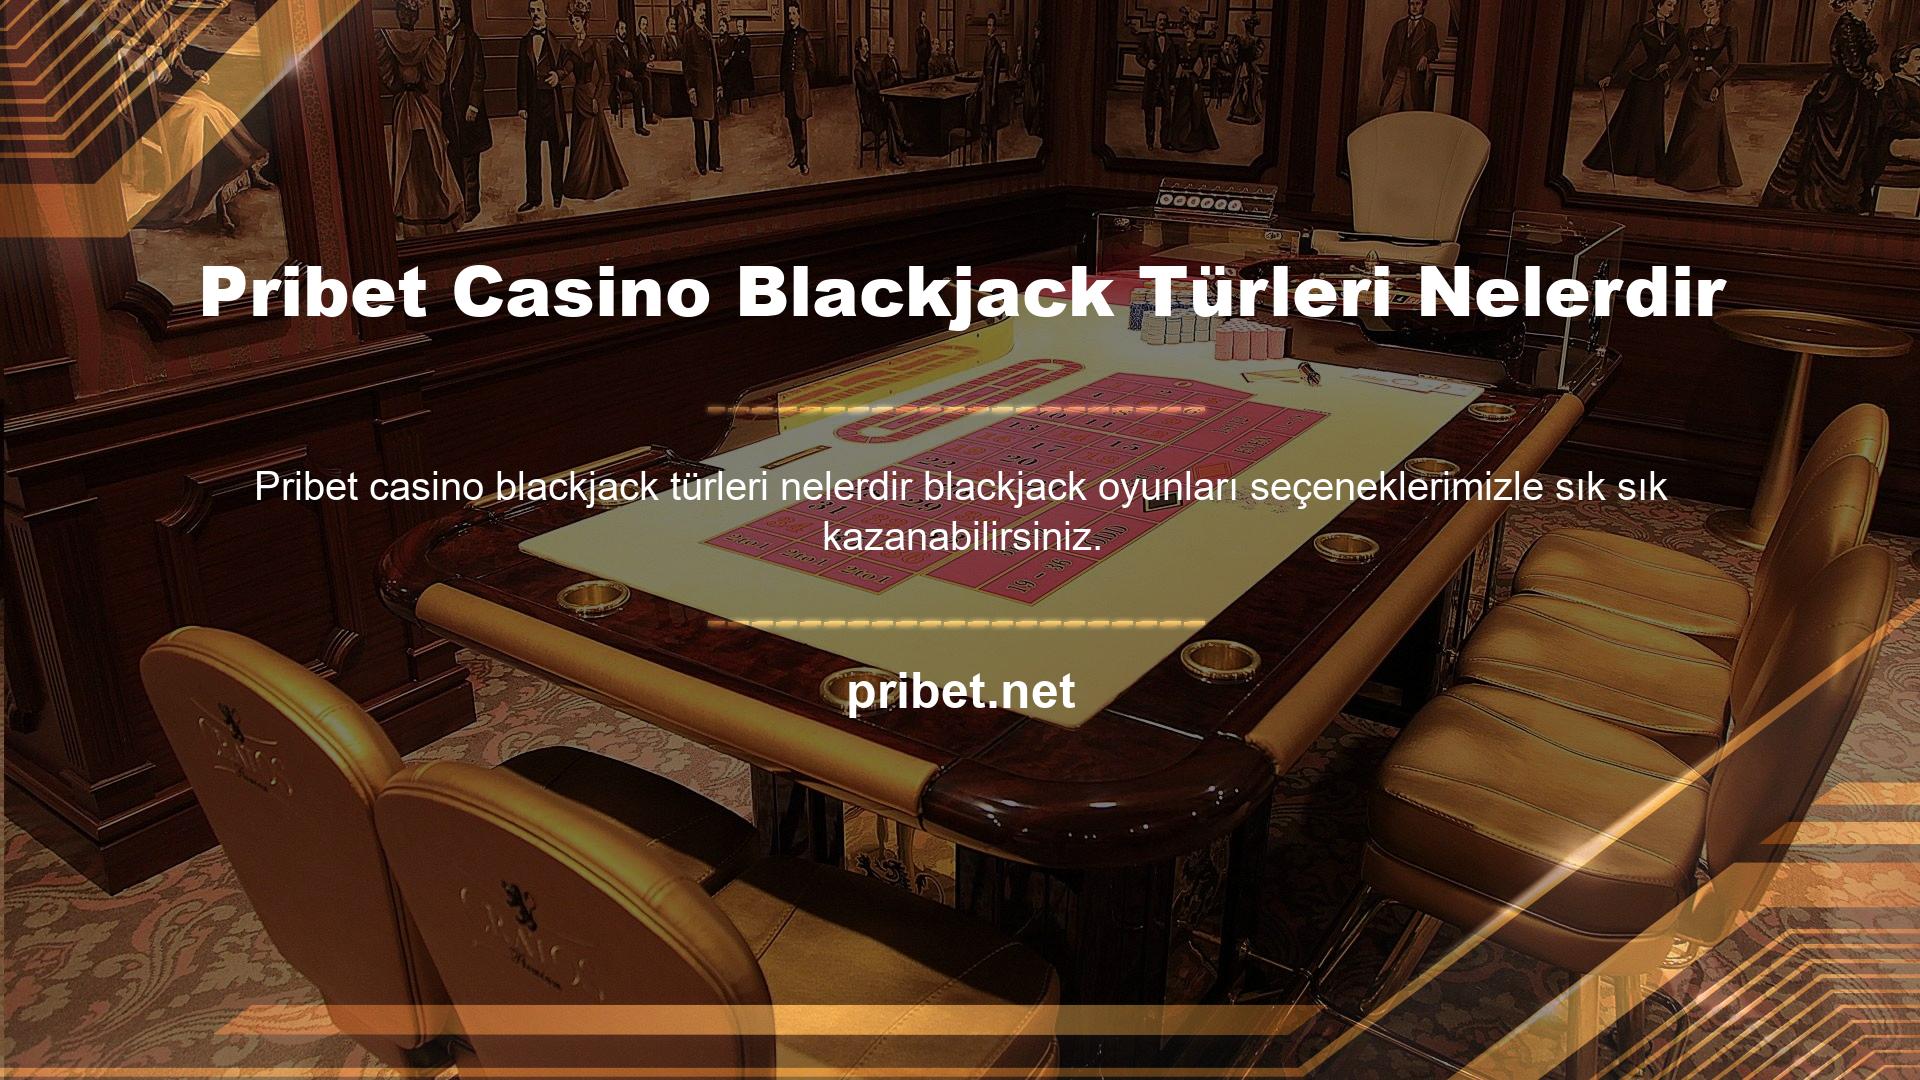 Platformdaki farklı blackjack türleri sizi heyecan verici bir deneyime yaklaştırıyor